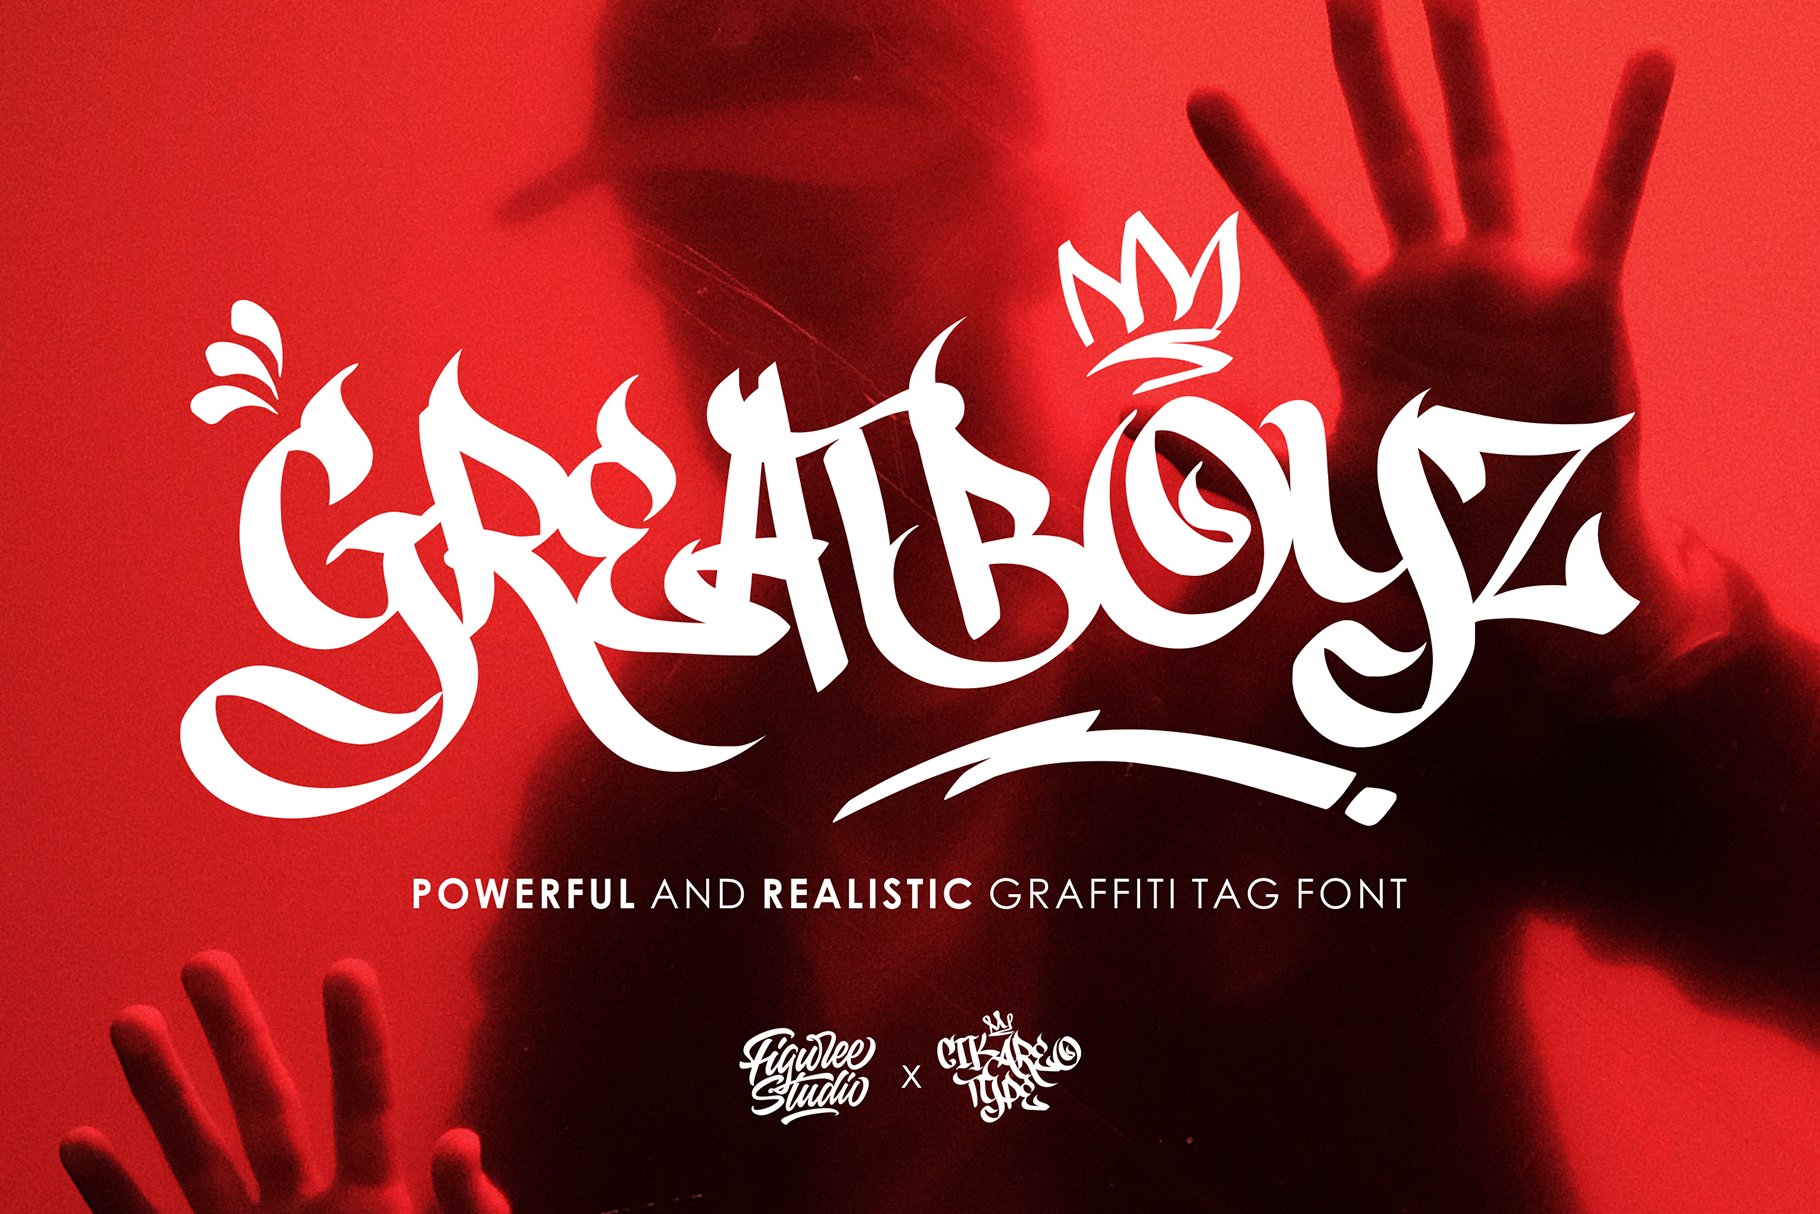 Greatboyz - Realistic Graffiti Tag cover image.